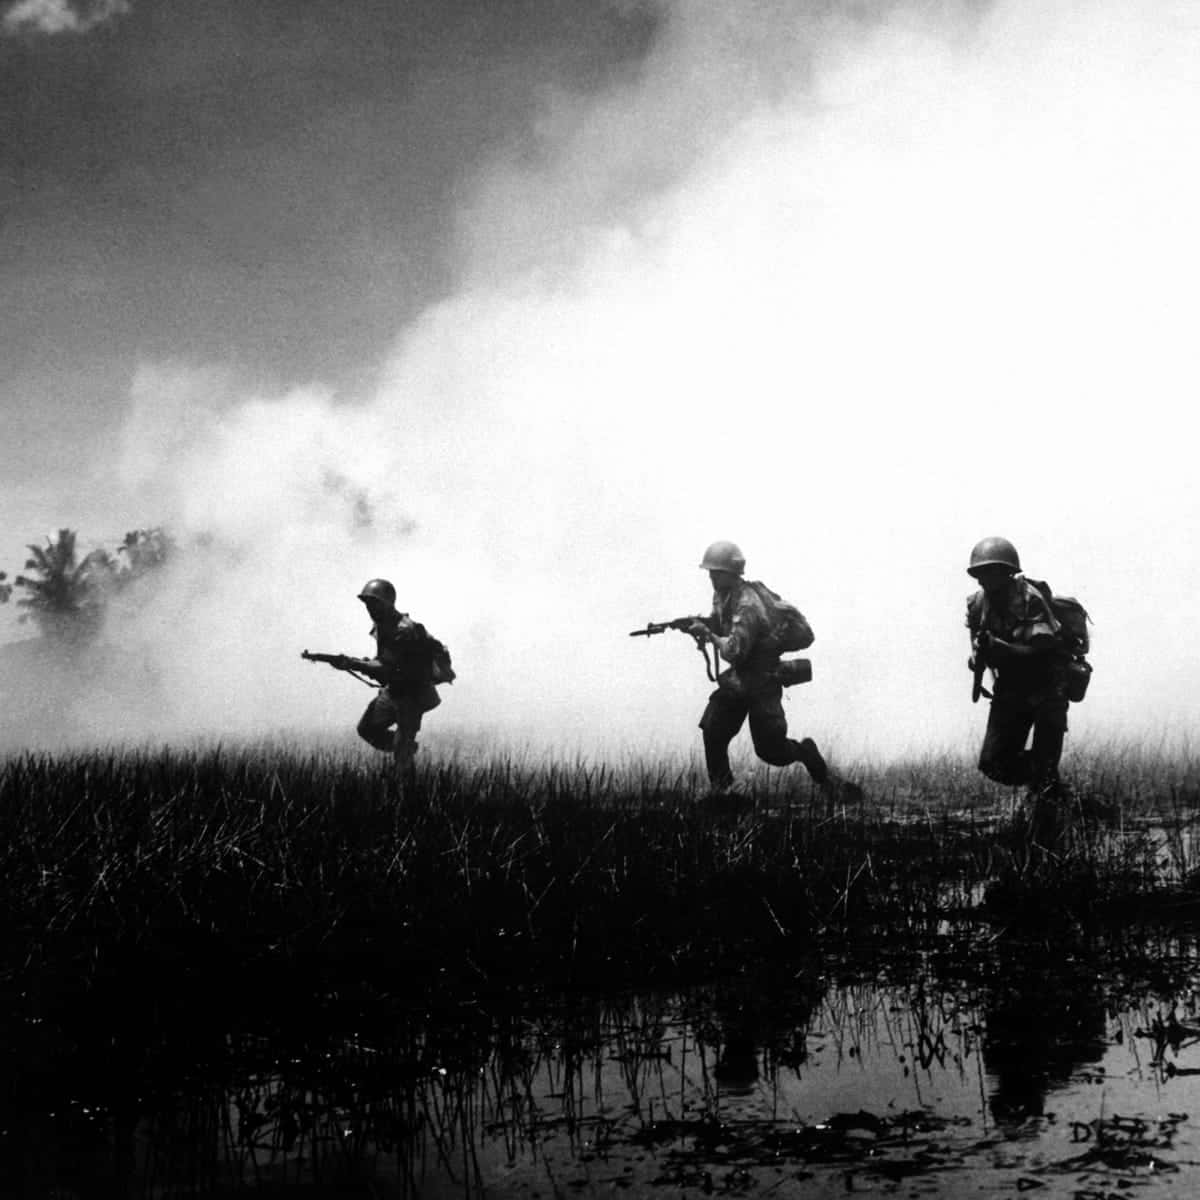 Tìm hiểu tình hình chiến sự trong thời kỳ chiến tranh Vietnam thông qua những bức ảnh lịch sử. Đó là hình ảnh chân thực về đời sống của dân tộc Việt Nam và một kho tàng giá trị để hiểu rõ hơn về những gì đã xảy ra trong quá khứ.